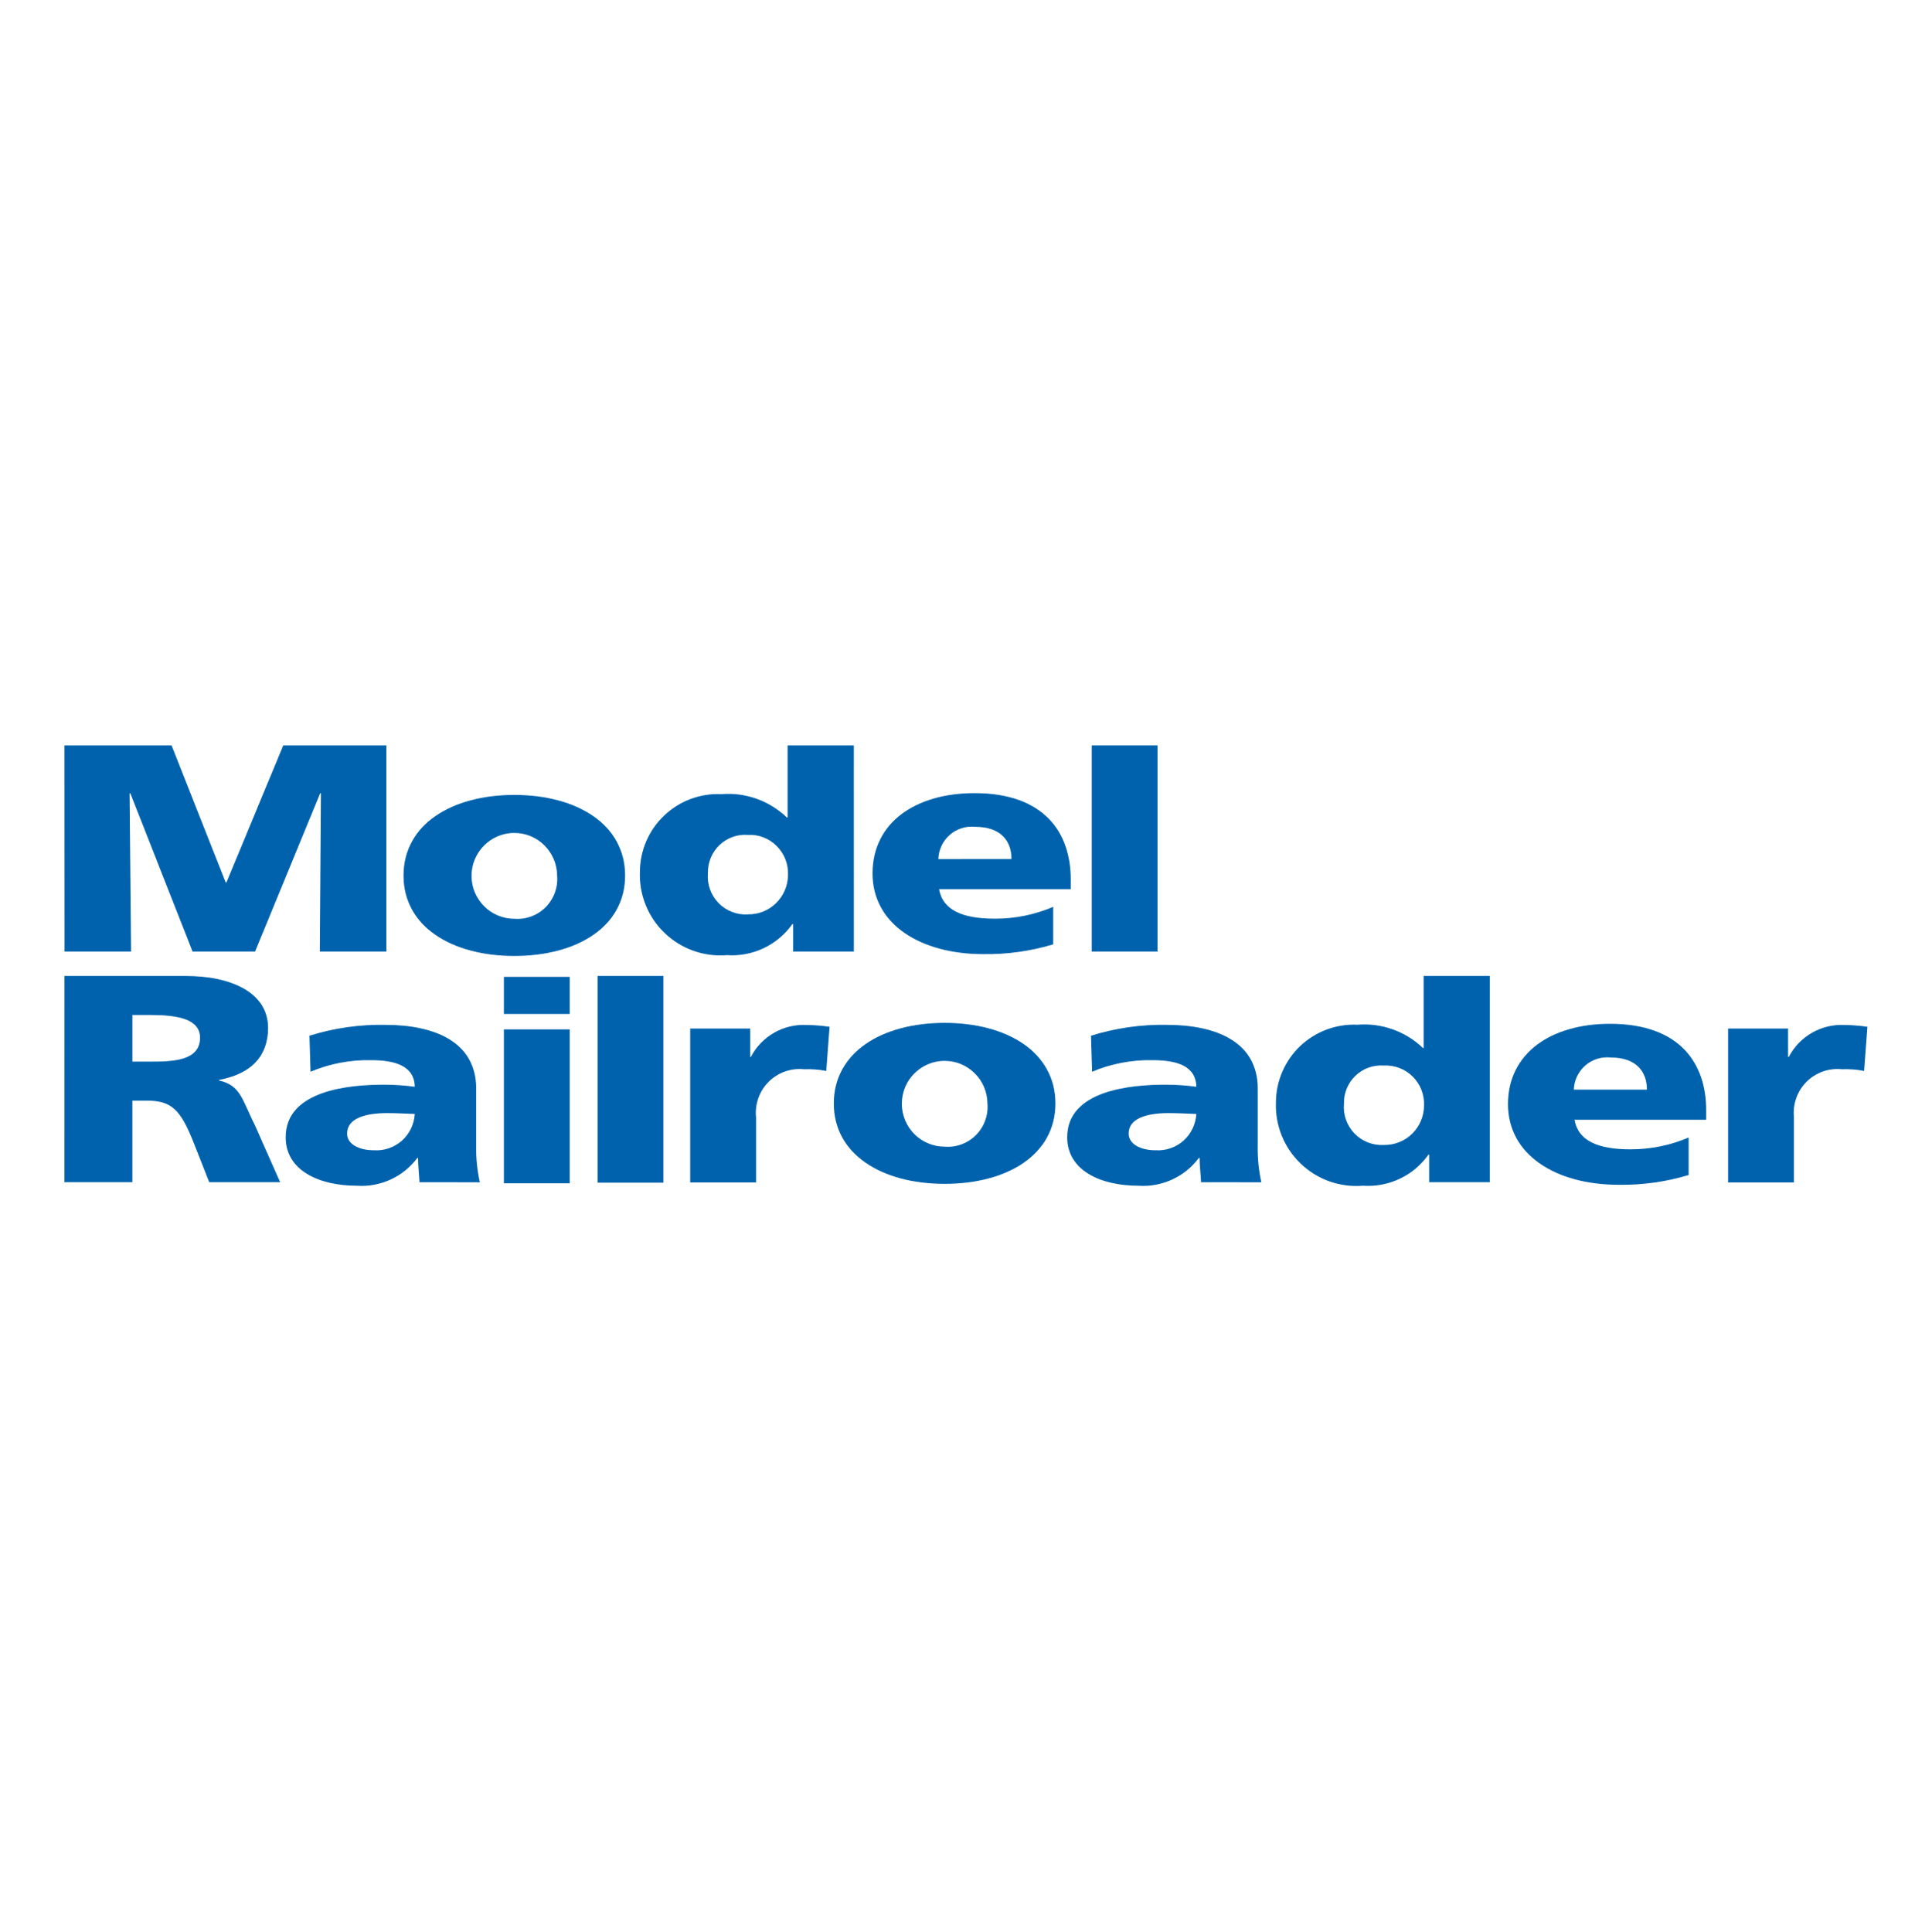 Model Railroader Logo  Transparent Image